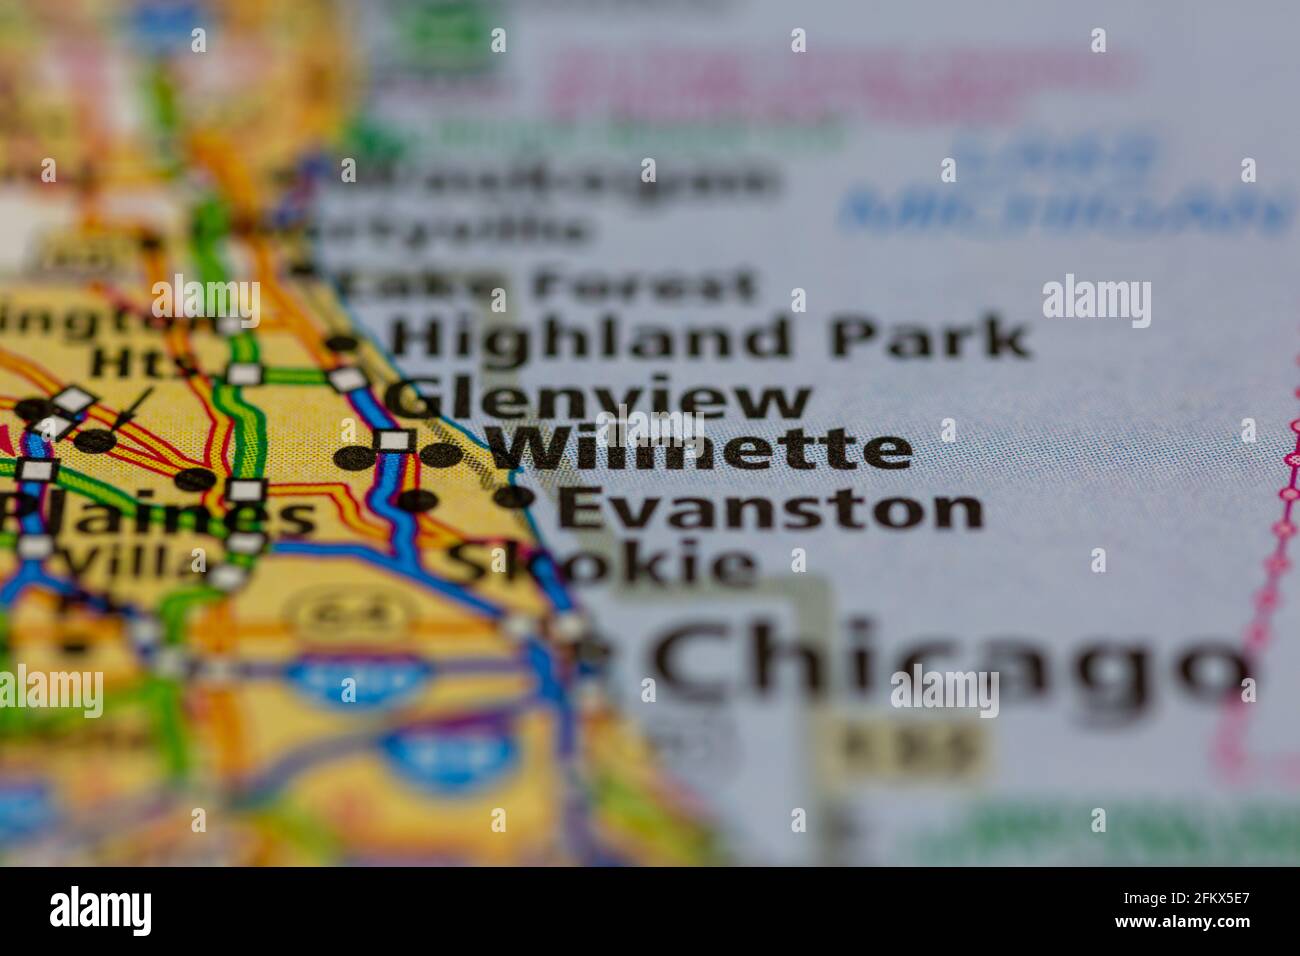 Wilmette Illinois mostrato su una mappa geografica o su una mappa stradale Foto Stock